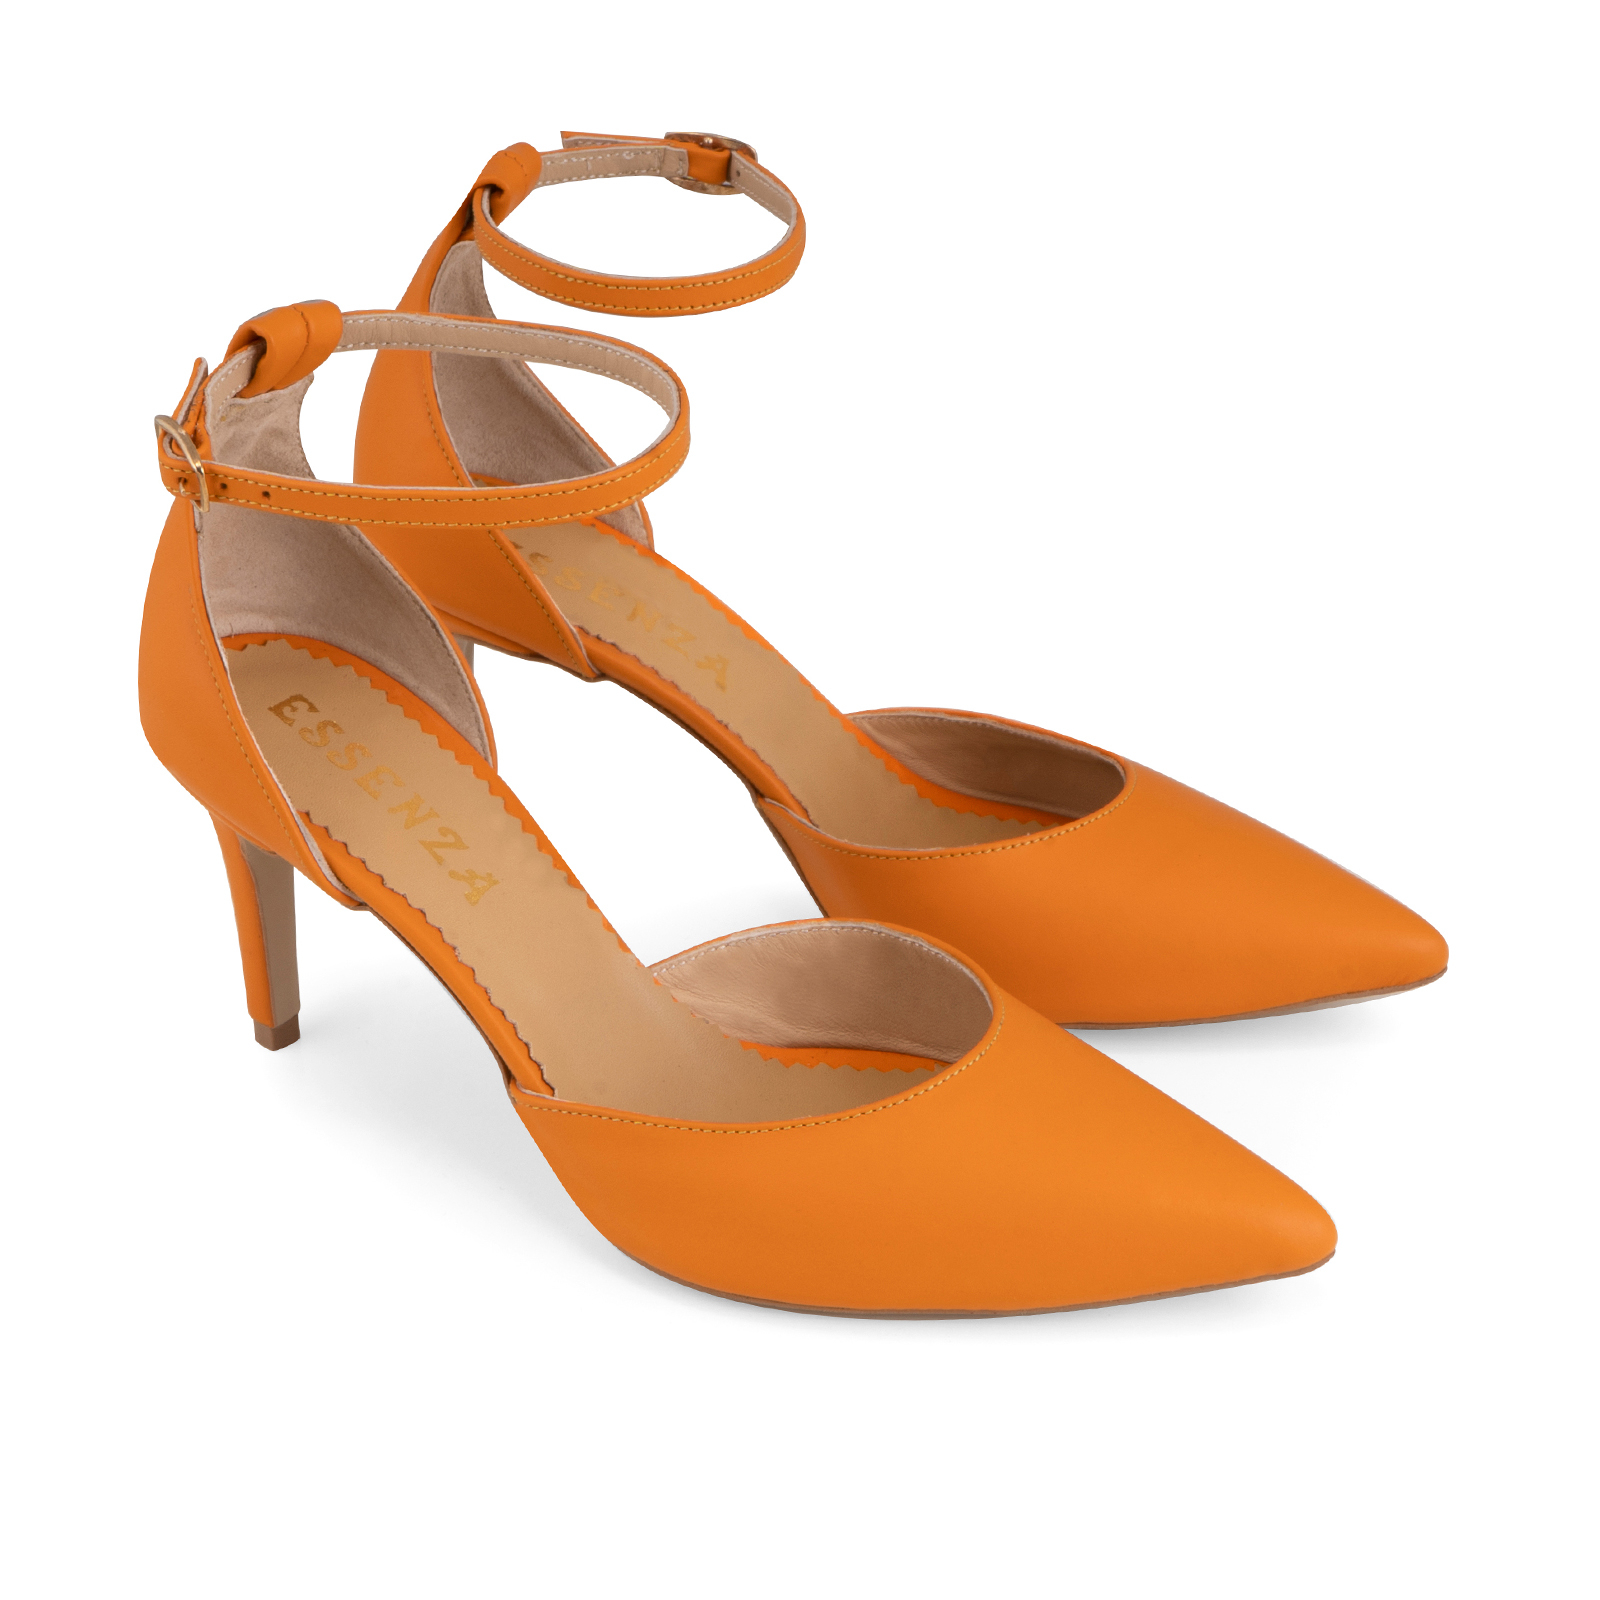 Spaceship Modish Integration Pantofi stiletto decupati, din piele naturala portocalie, cu toc de 7 cm  imbracat in piele .